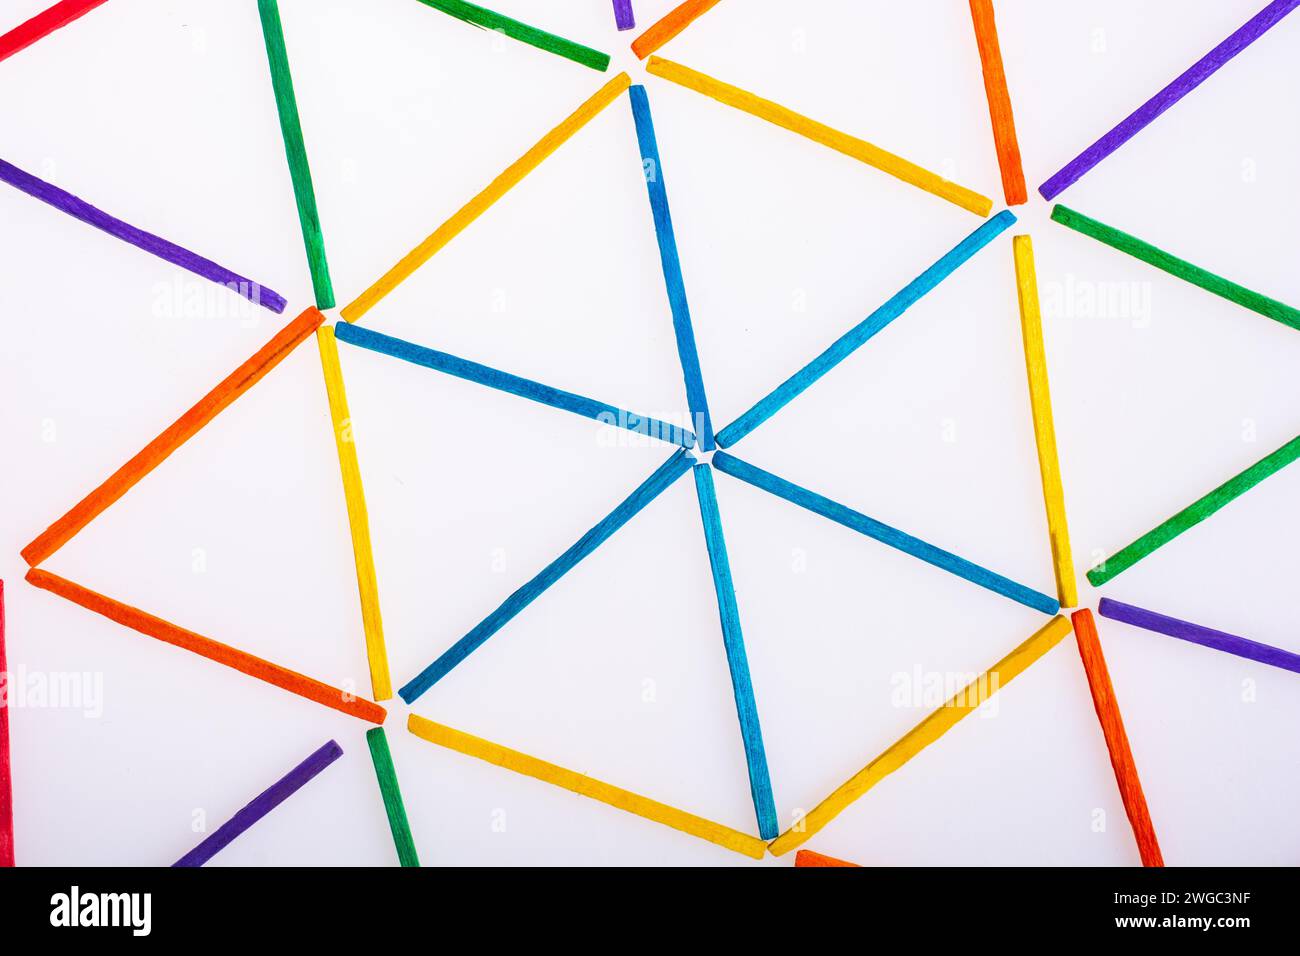 Les figures géométriques triangles formés avec des bâtons colorés Banque D'Images